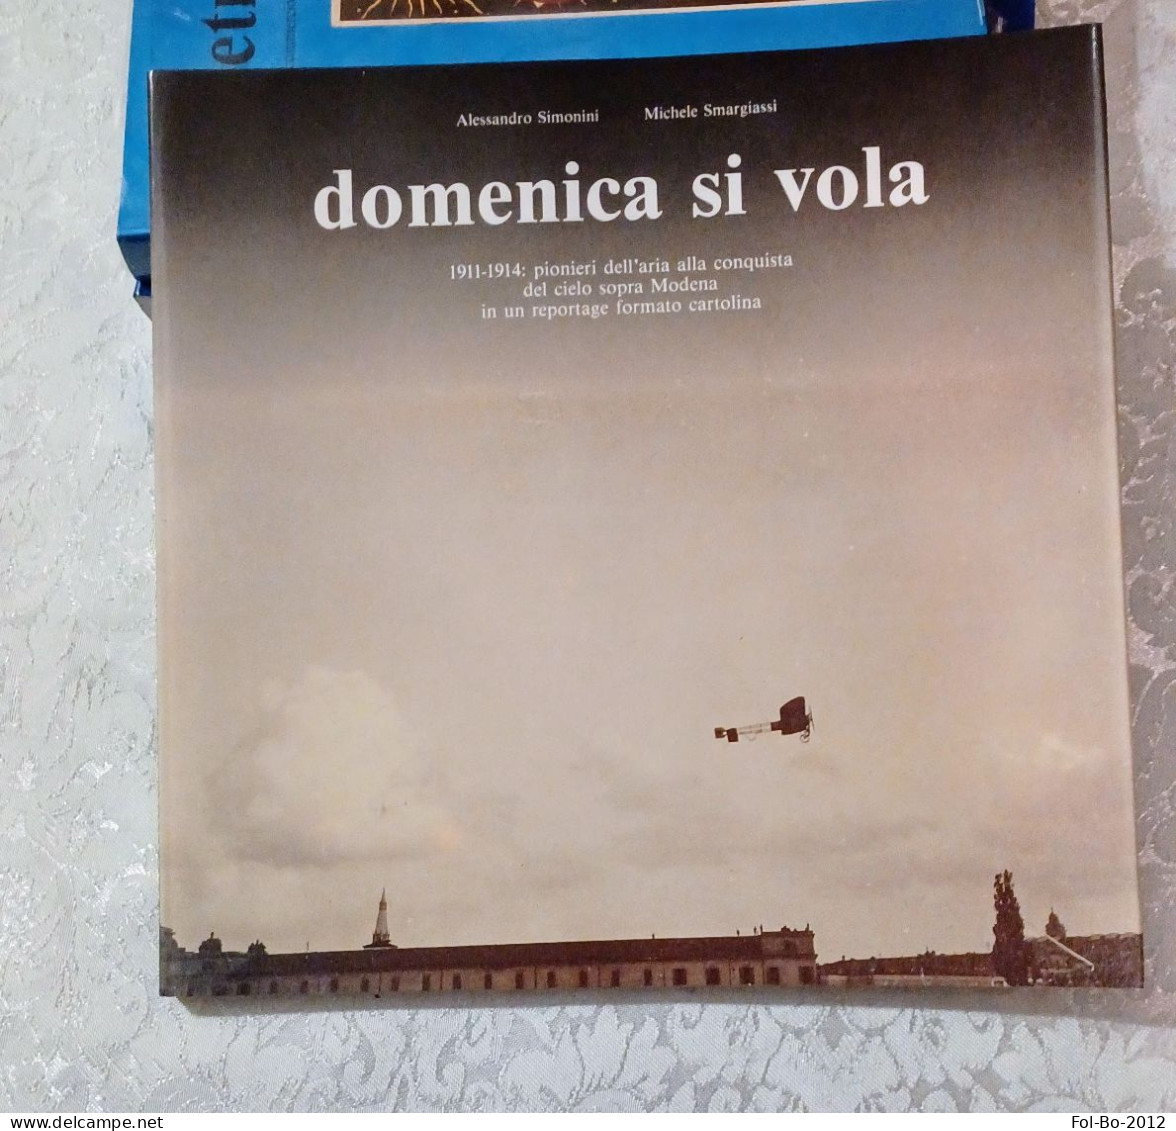 Domenica Si Vola 1911/1914 Pionieri Dell'aria Nei Cieli Sopra Modena Del 1990 - Bücher & Kataloge